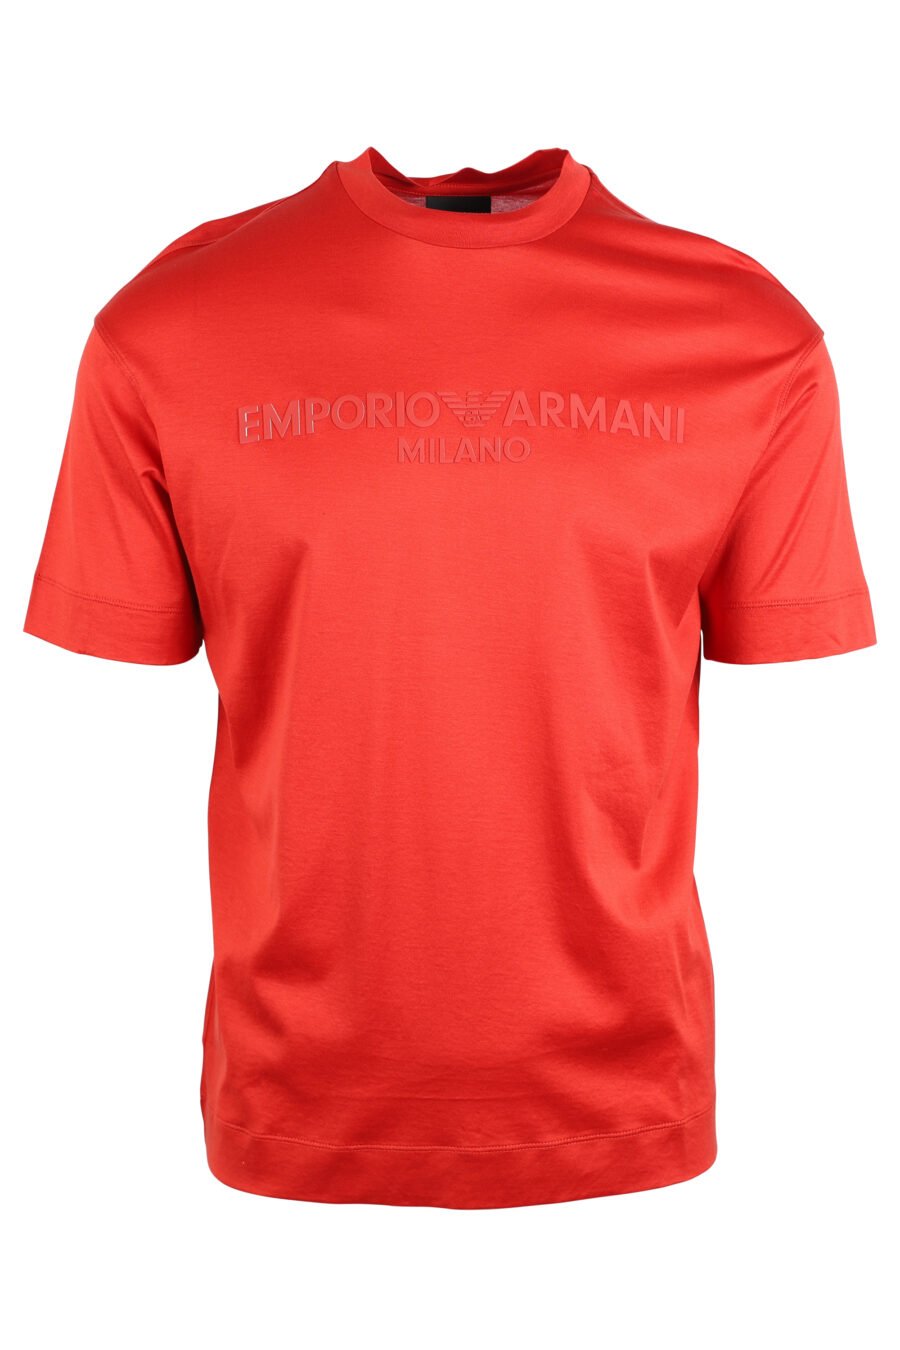 T-shirt vermelha com maxilogo monocromático - IMG 4747